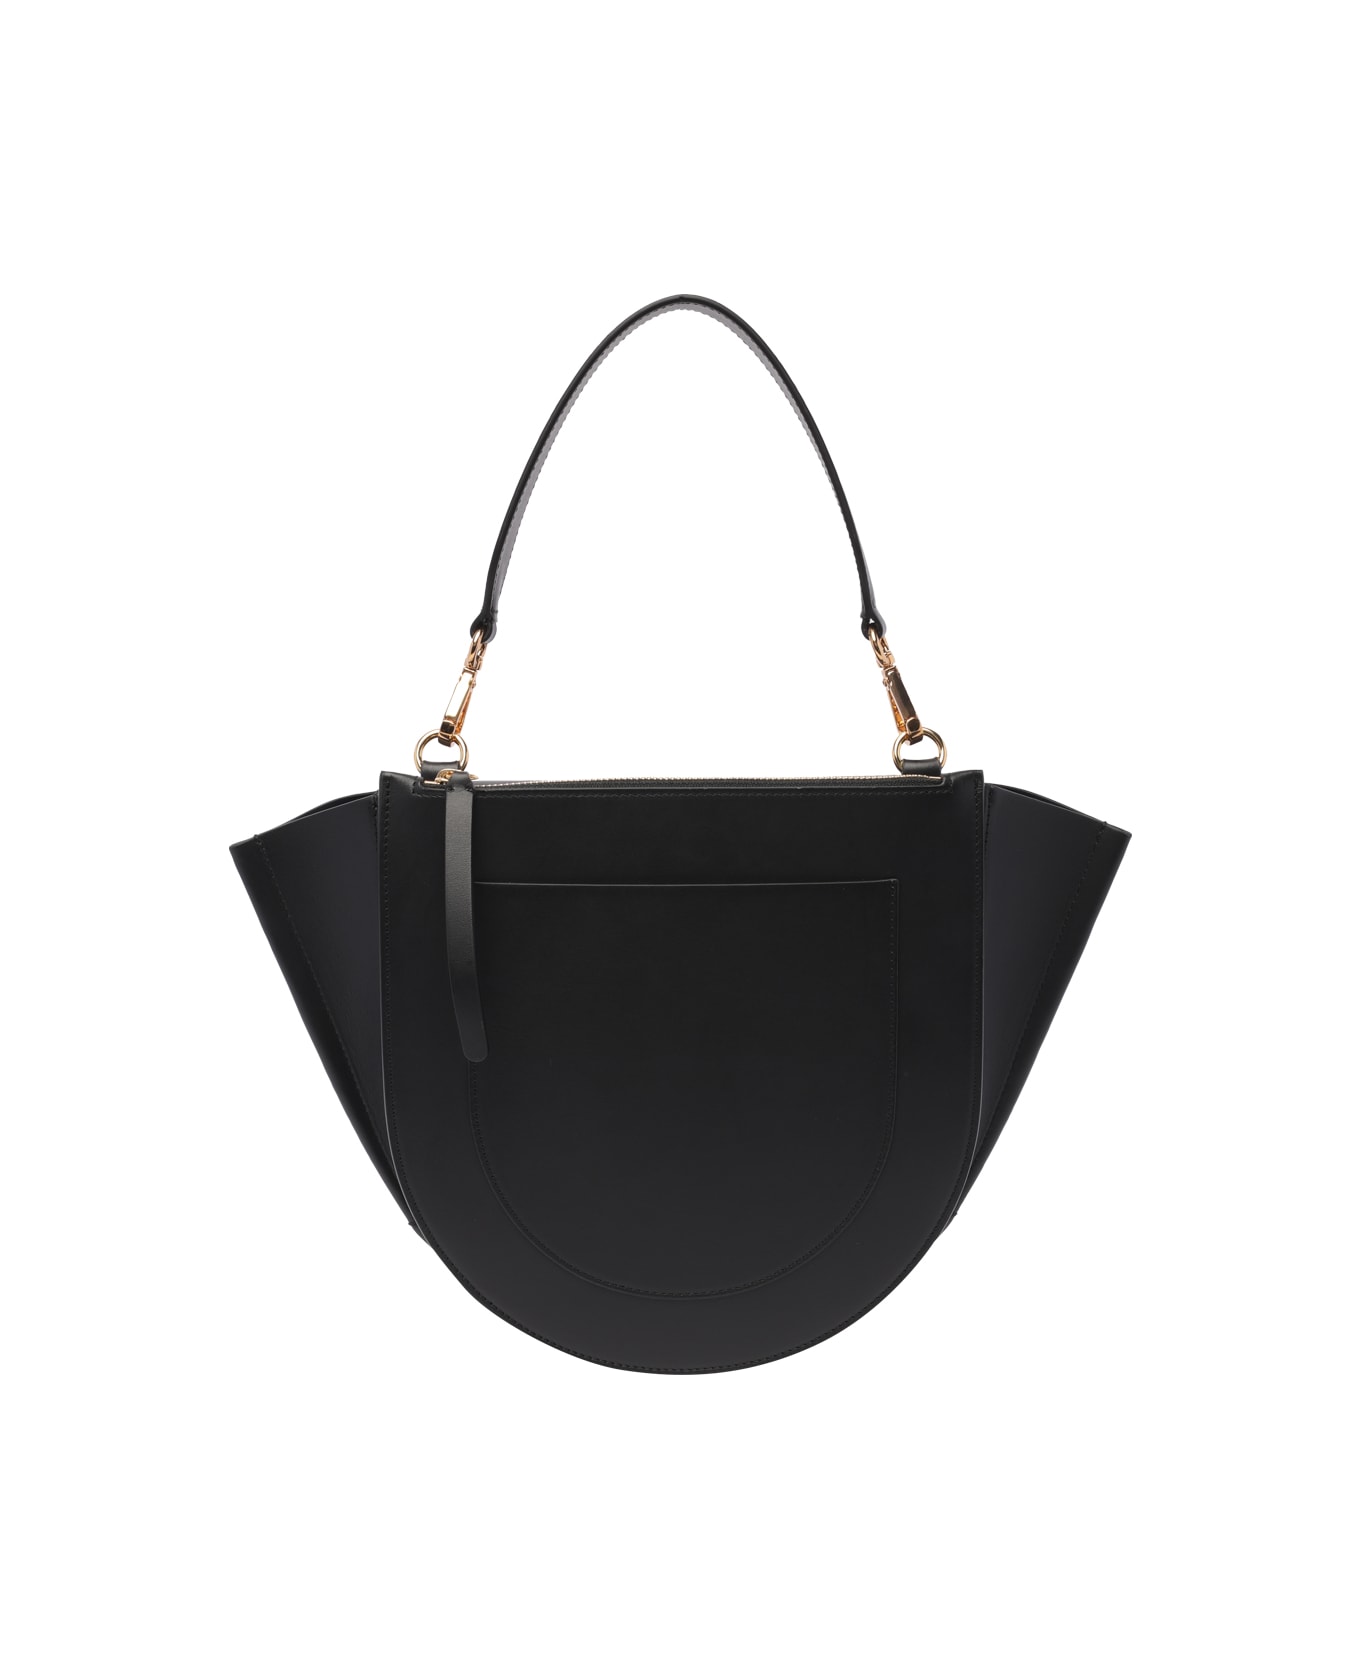 Wandler Medium Hortensia Handbag - Black トートバッグ